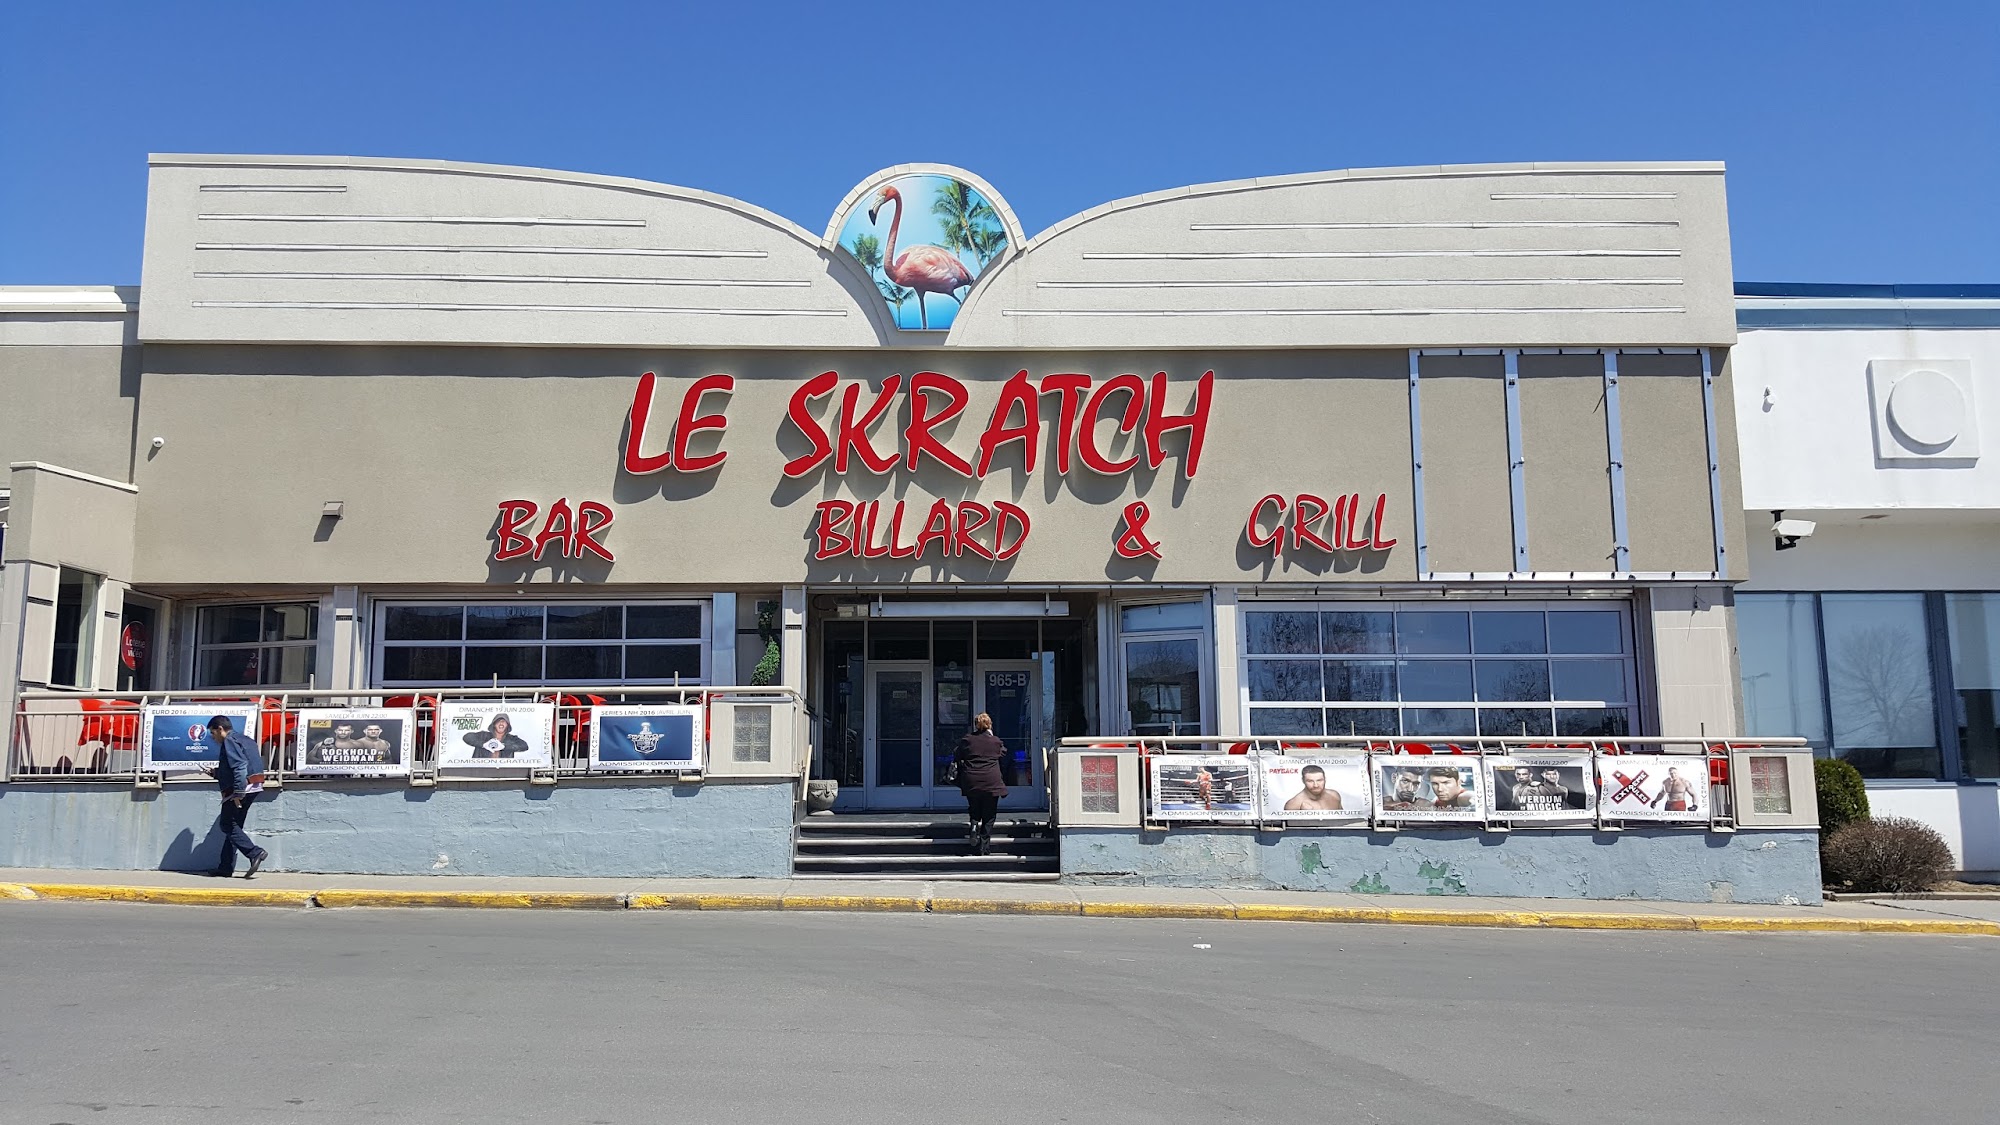 Le Skratch Laval